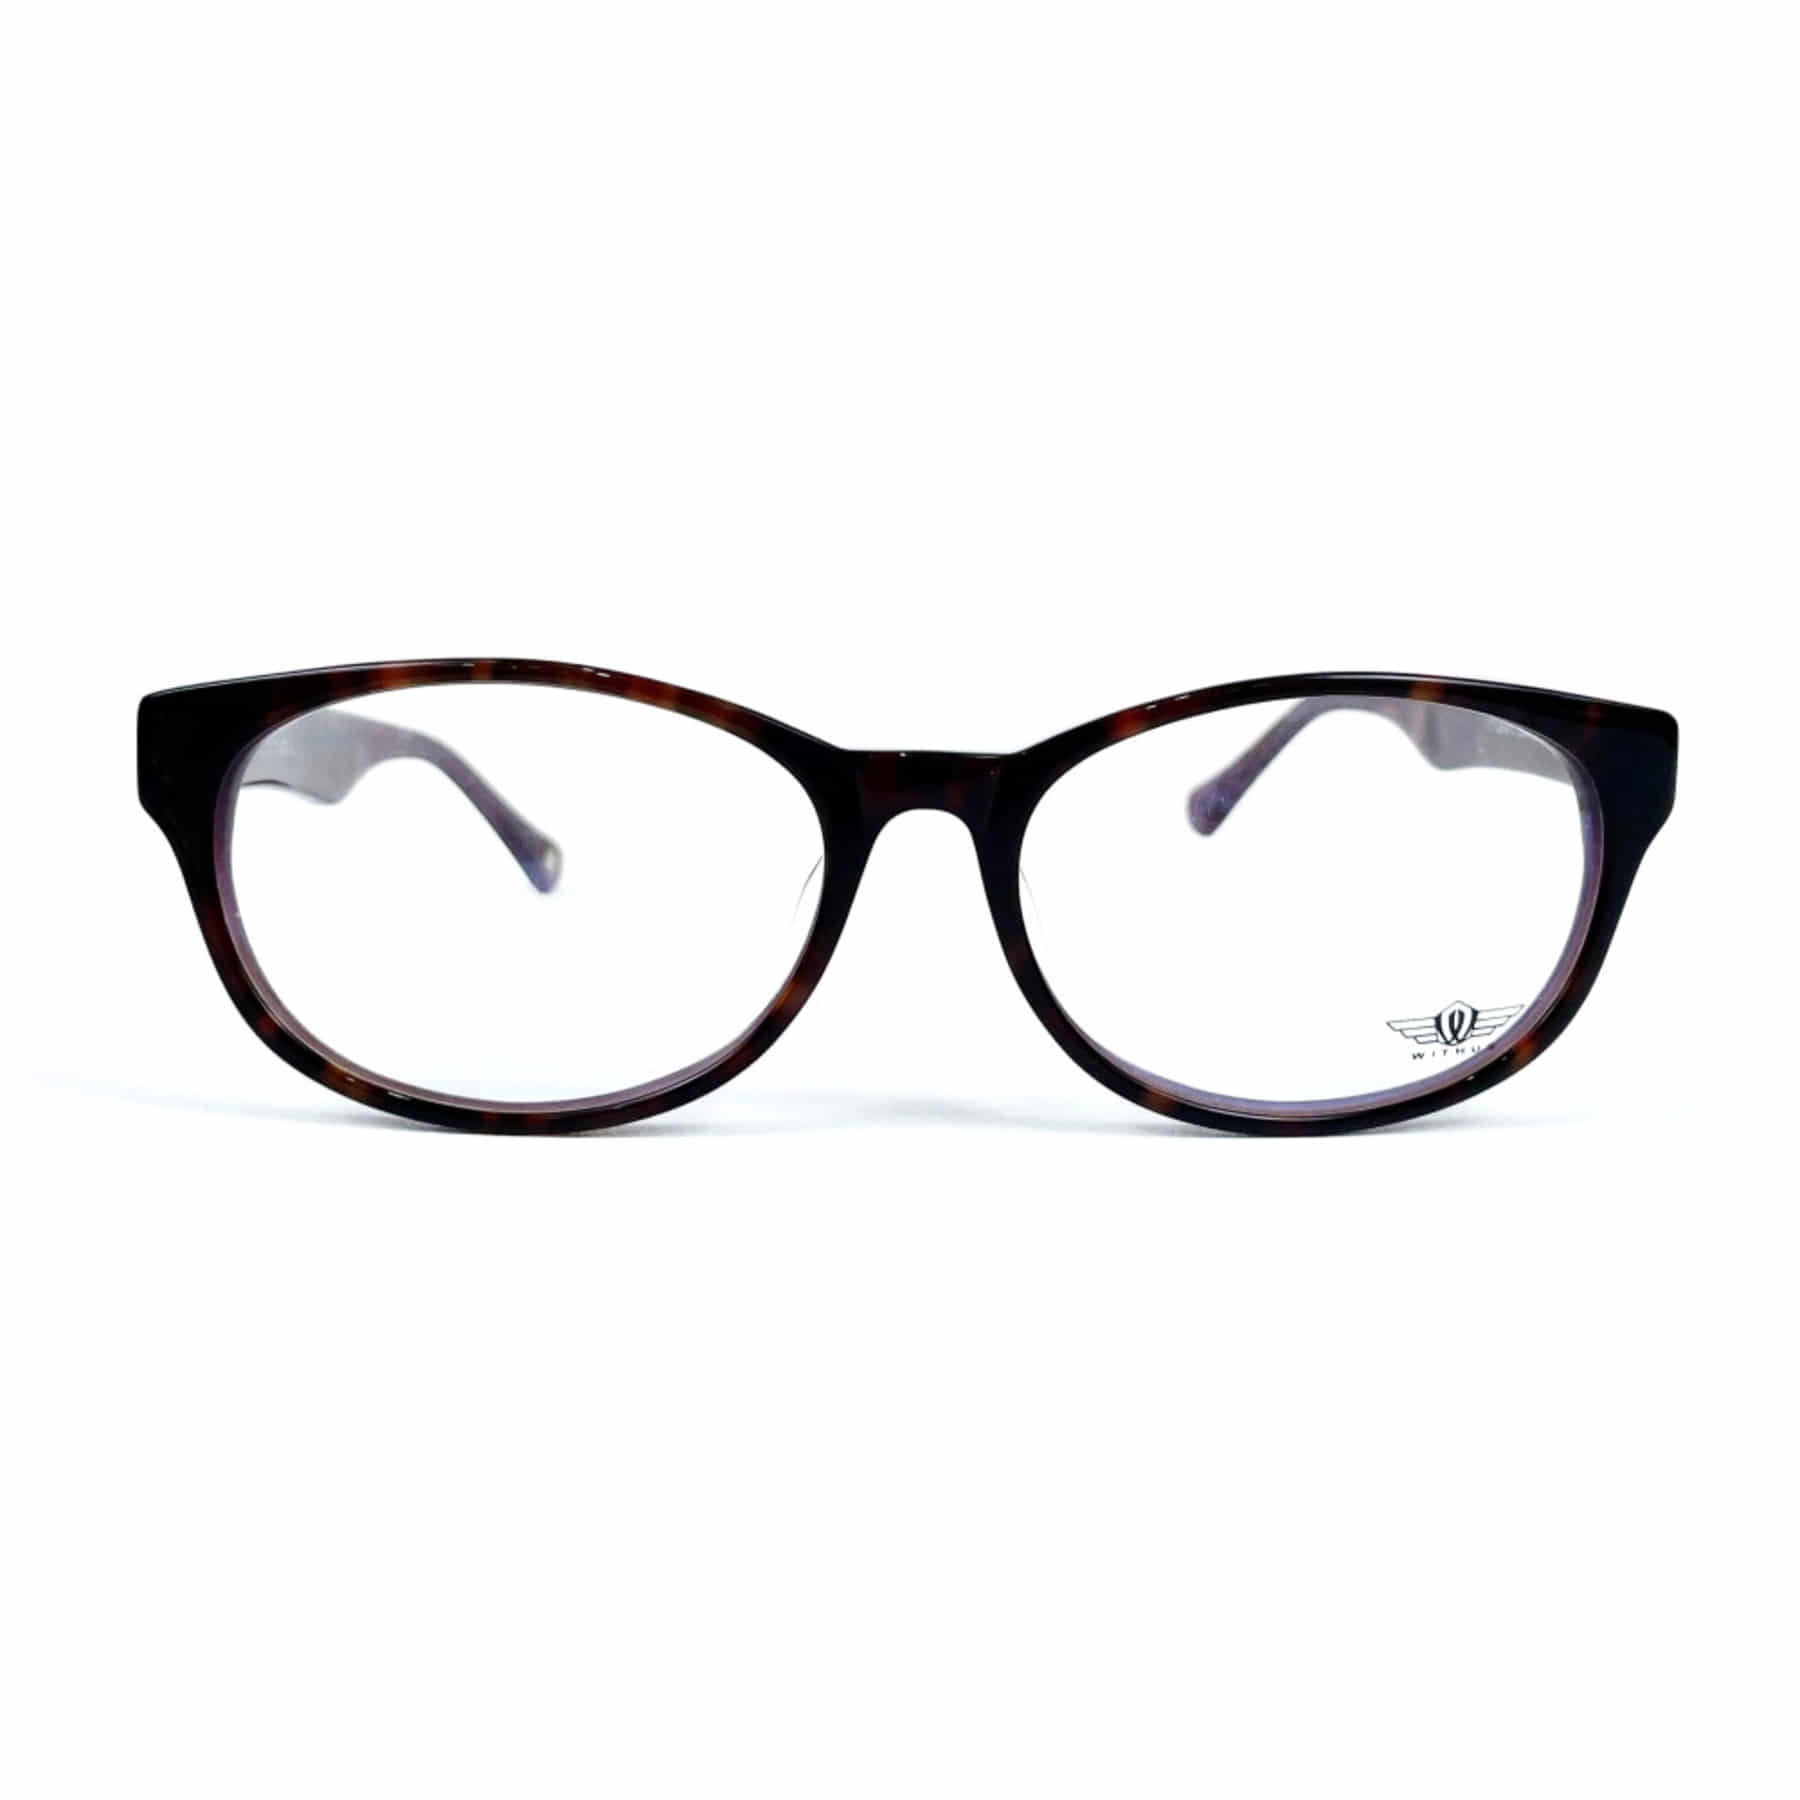 WITHUS-9101, Korean glasses, sunglasses, eyeglasses, glasses